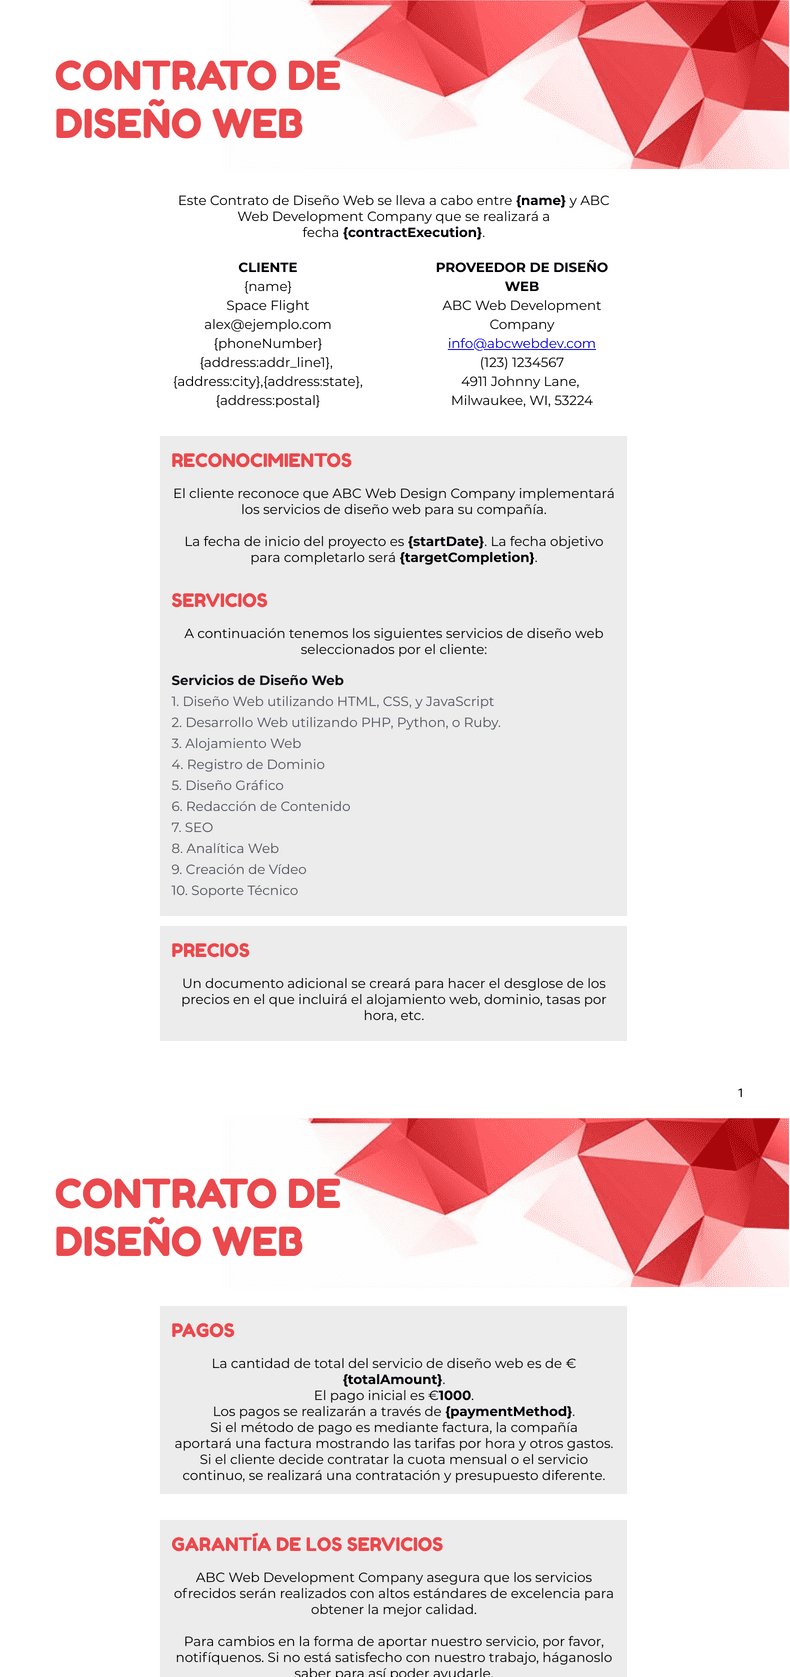 PDF Templates: Contrato de Diseño Web Plantilla